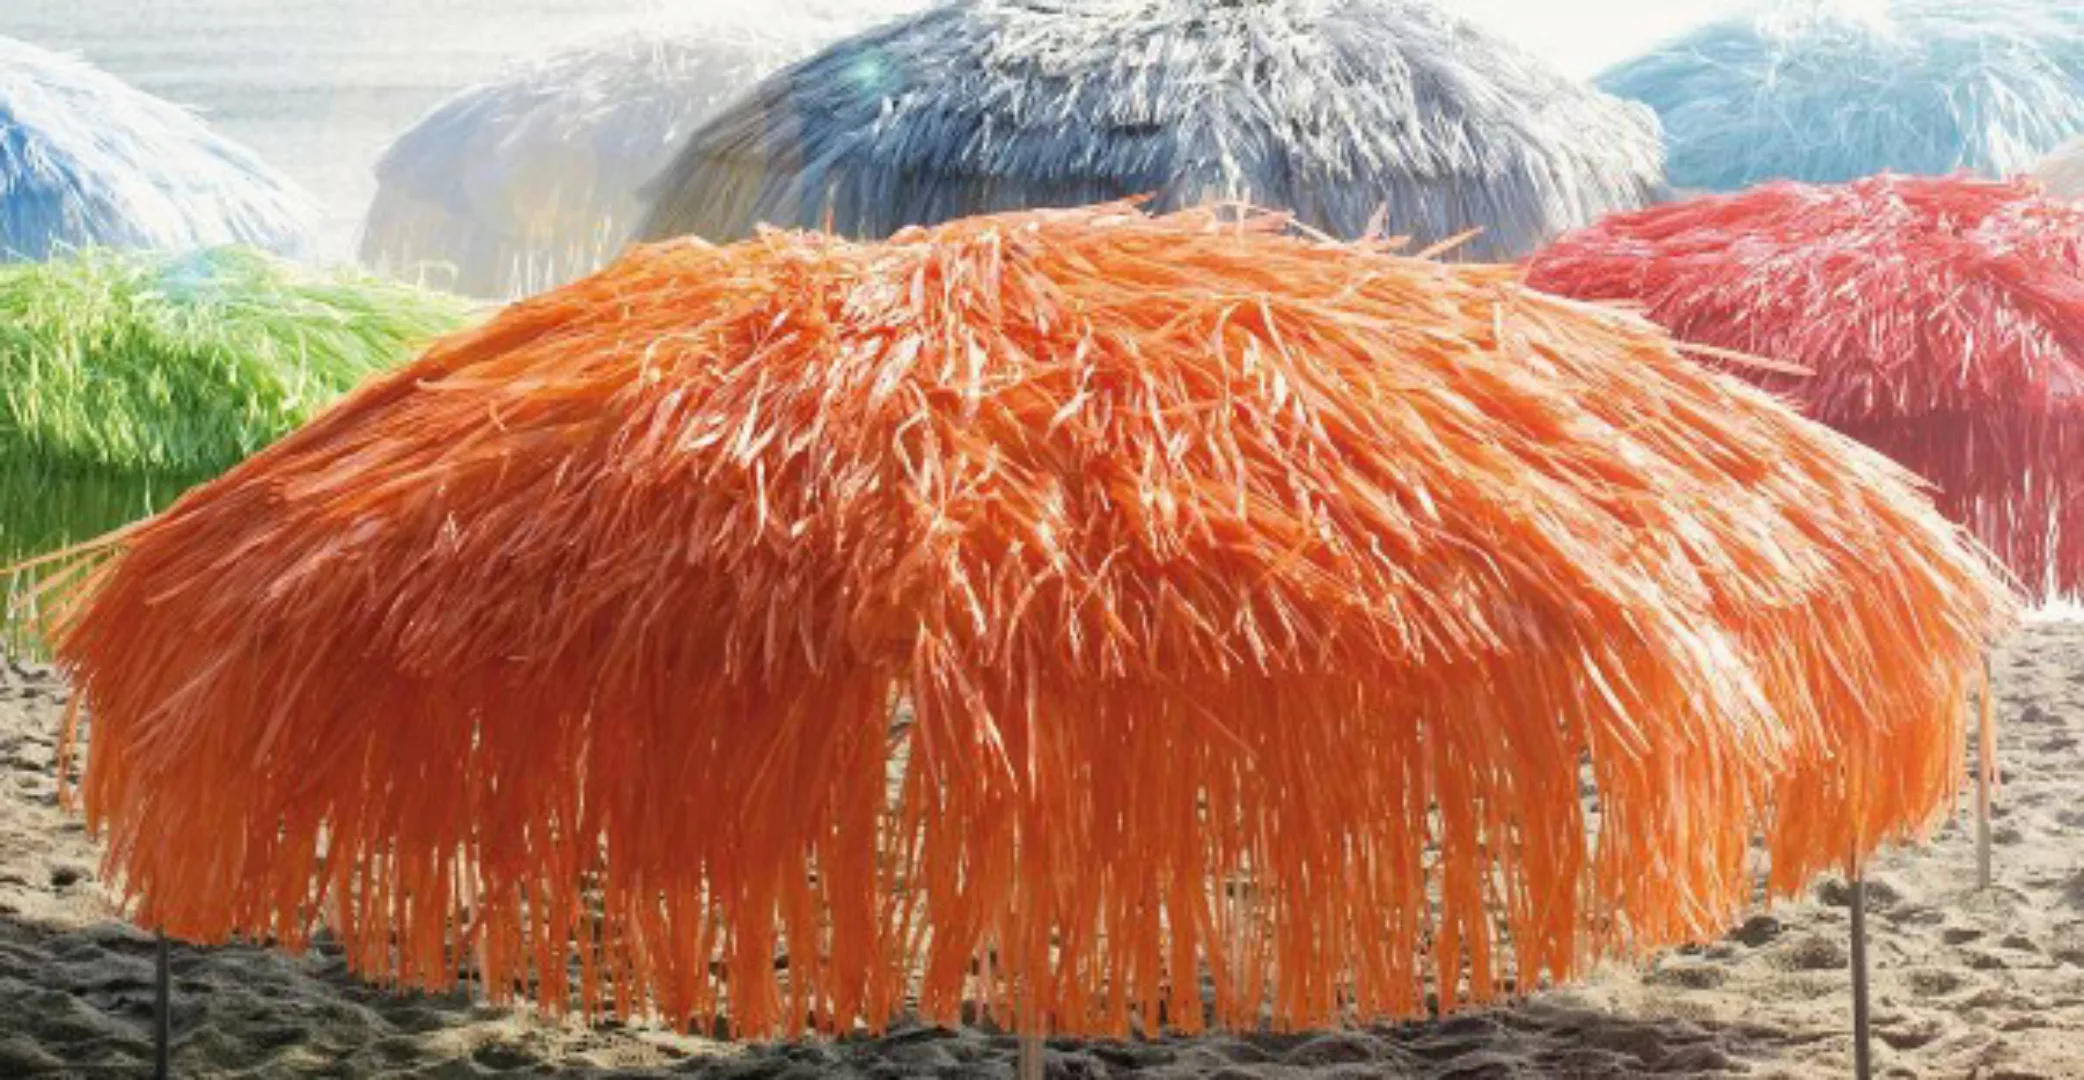 Jan Kurtz - Hawaii Sonnenschirm Ø 200cm - orange/Polyester/mit Knickgelenk/ günstig online kaufen